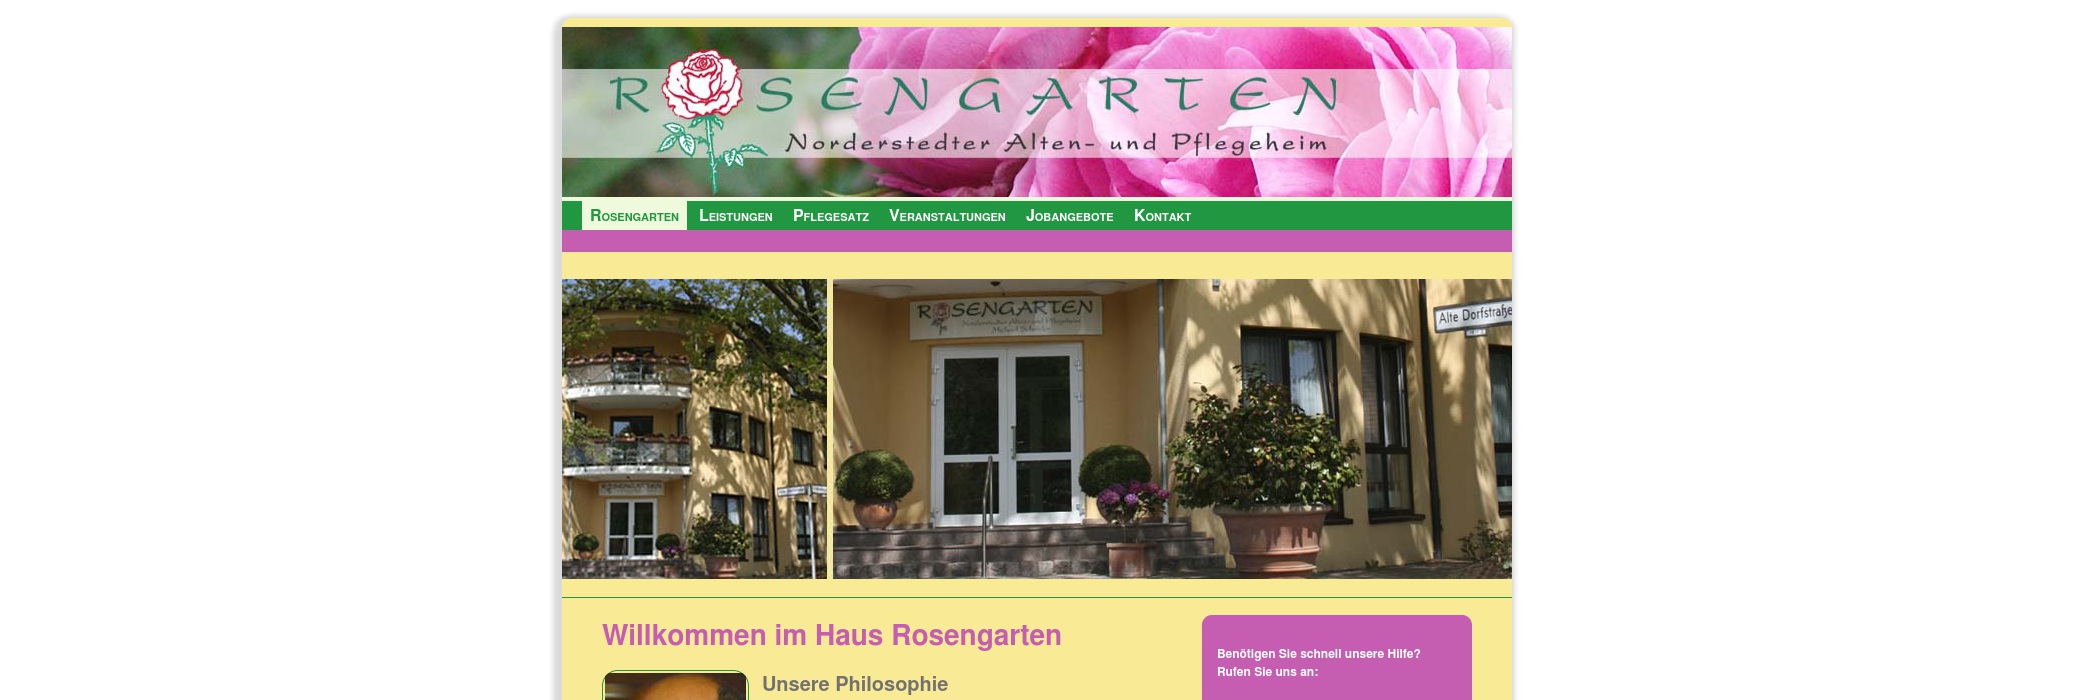 Rosengarten Norderstedter Alten- und Pflegeheim